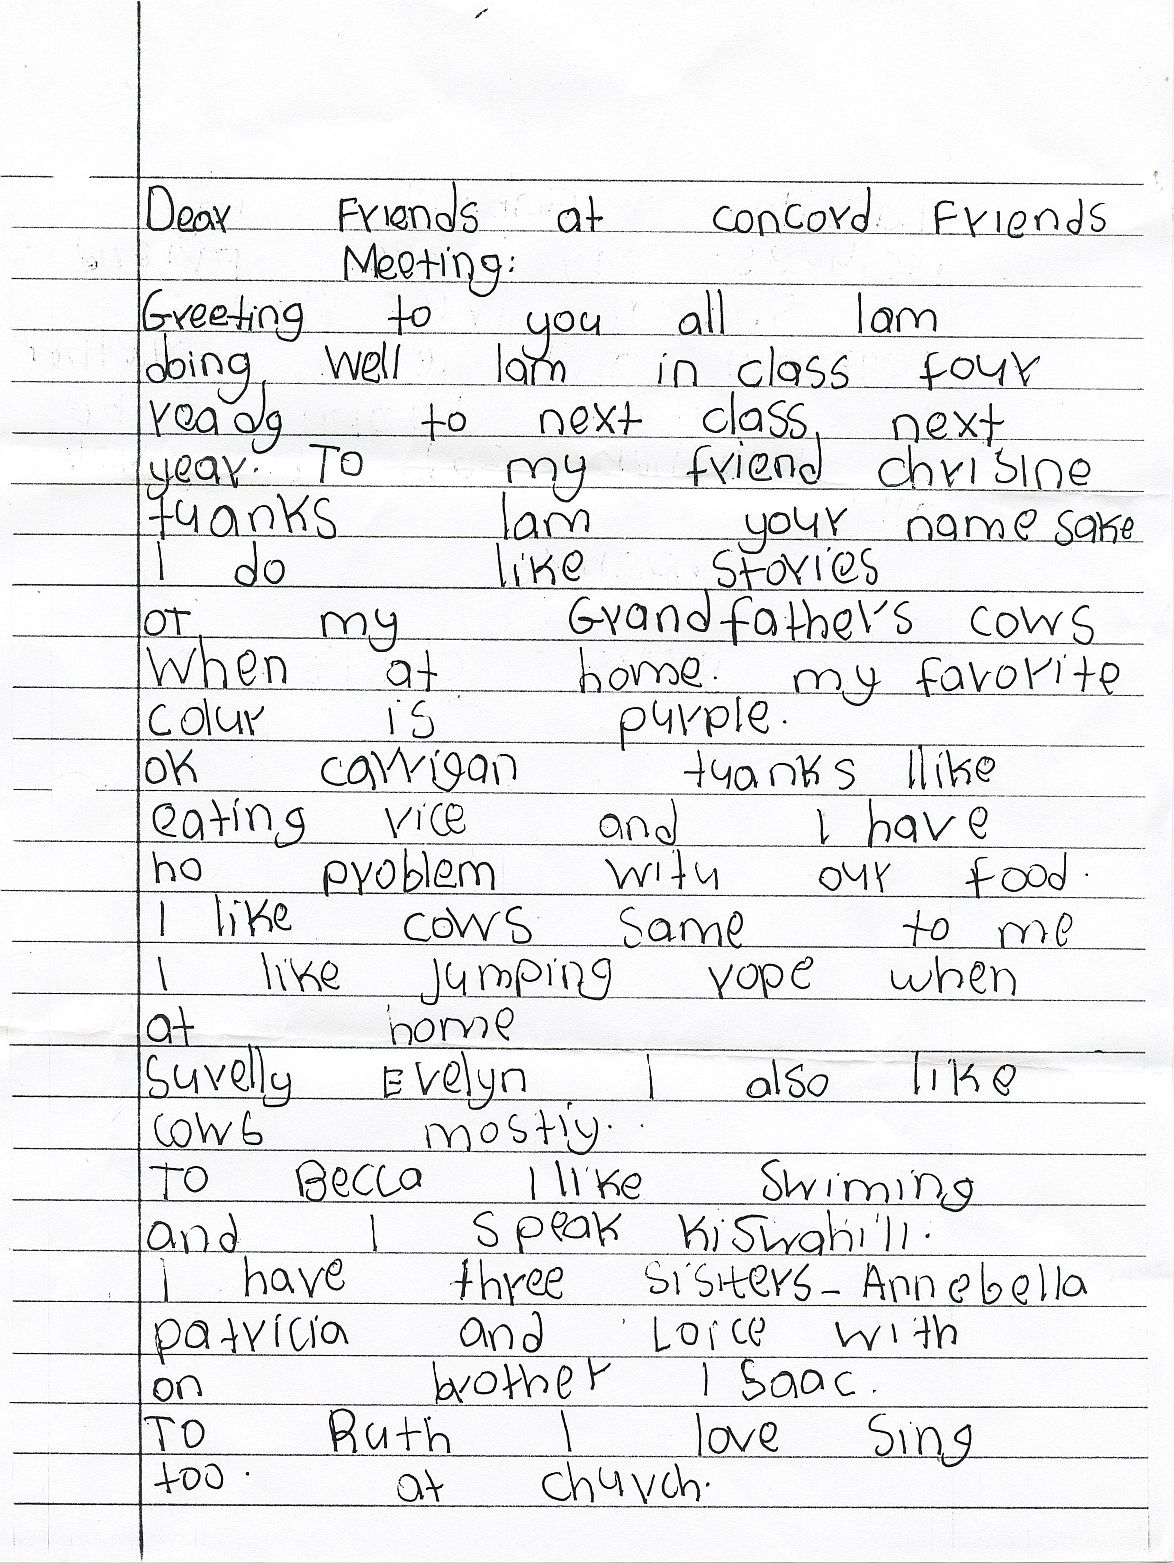 Page 1 of letter from Christine at Kakamega School, Kenya